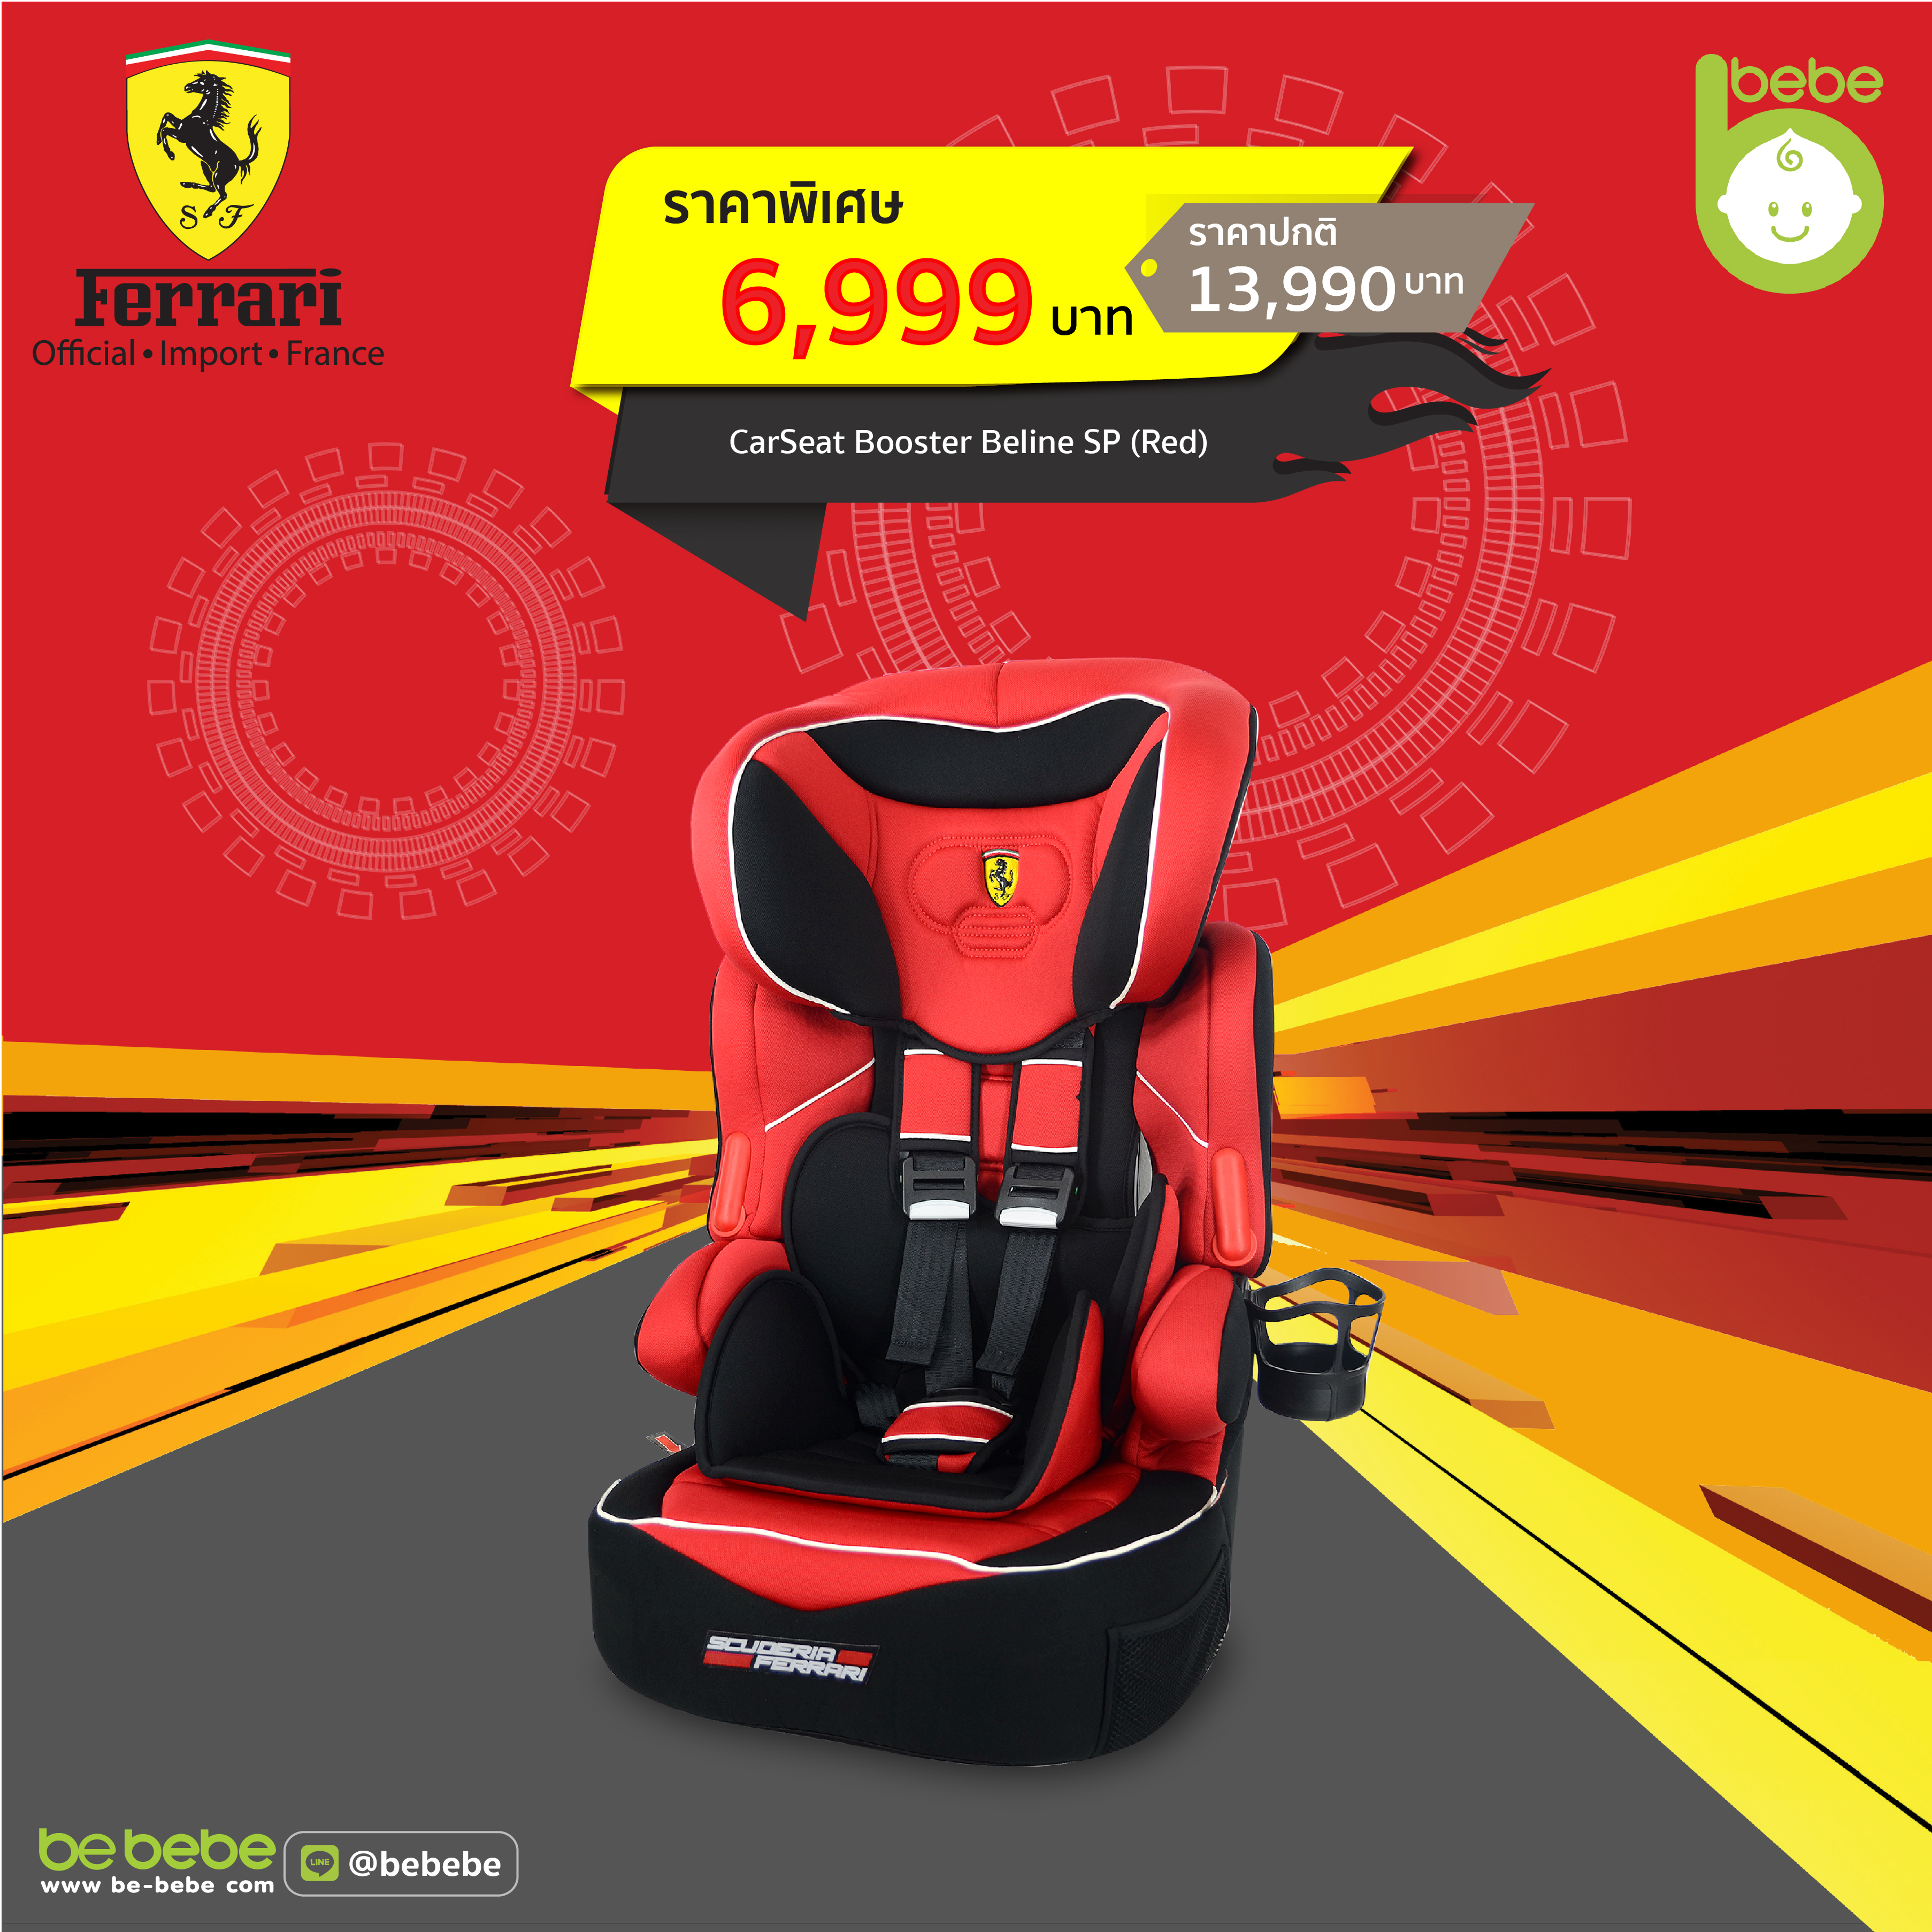 Car Seat Ferrari : High Back Booster Beline SP (Red) 